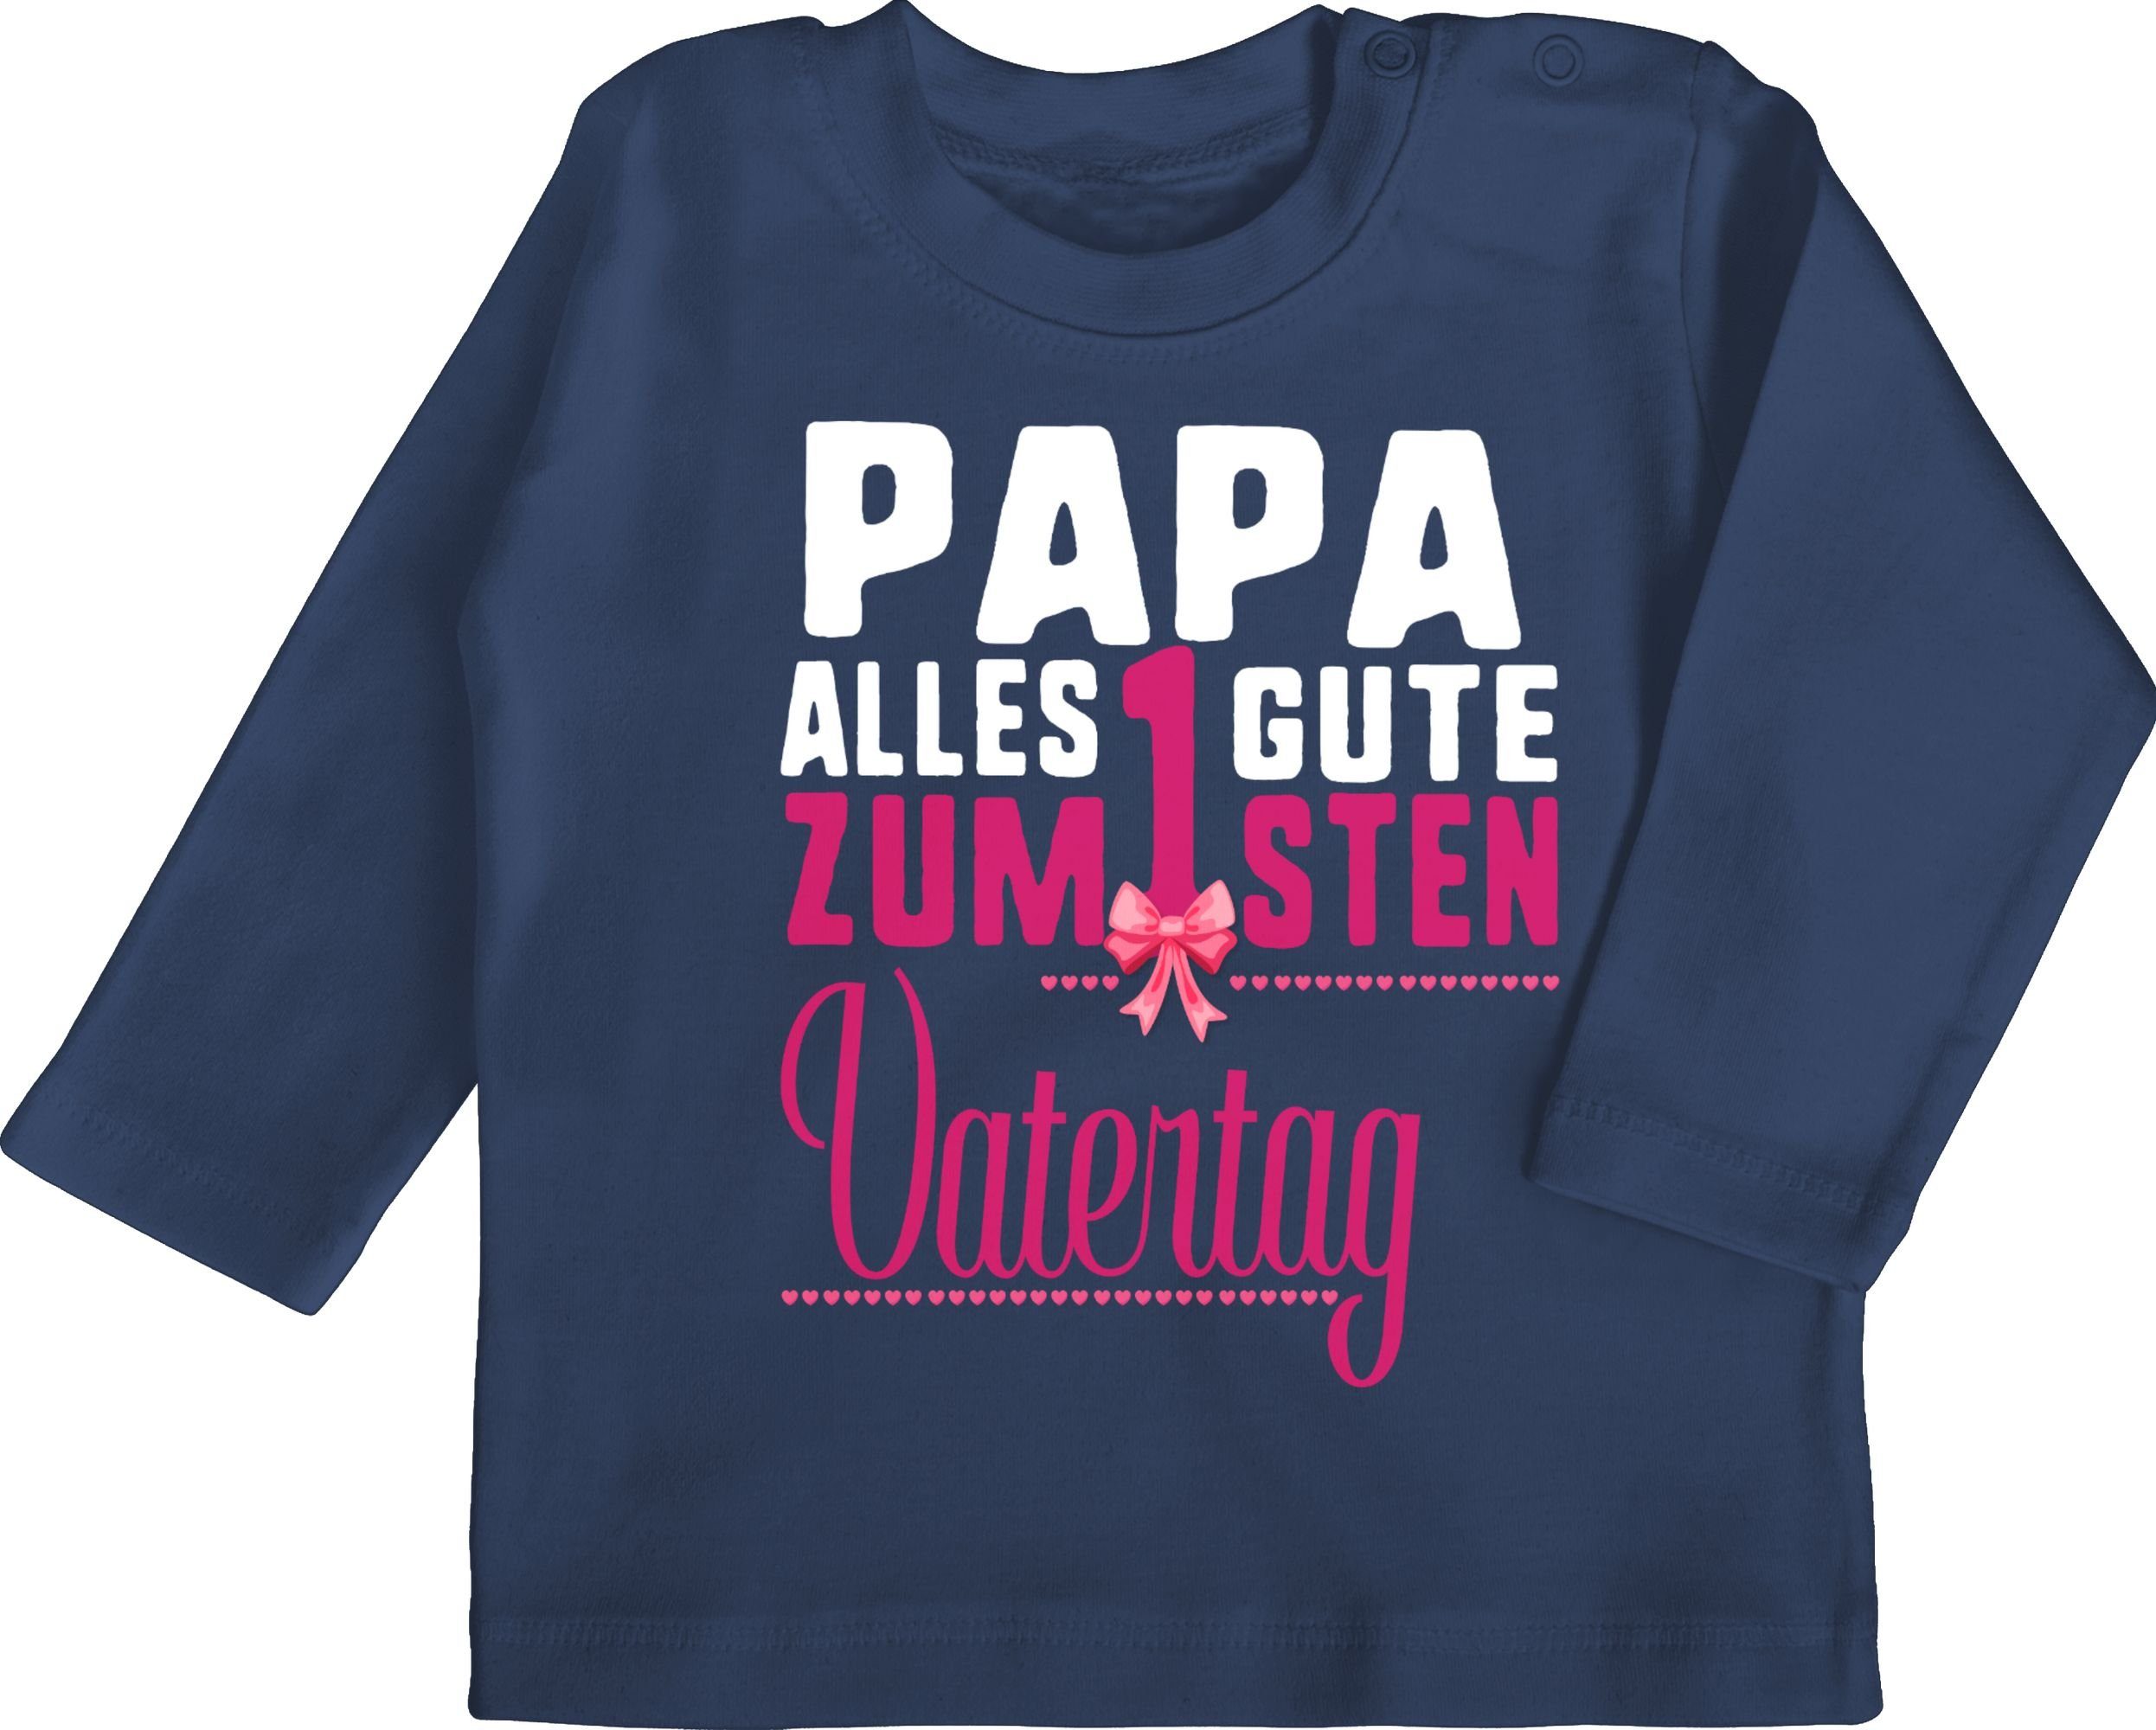 Shirtracer T-Shirt Papa alles Guten zum 1sten Vatertag fuchsia Geschenk Vatertag Baby 2 Navy Blau